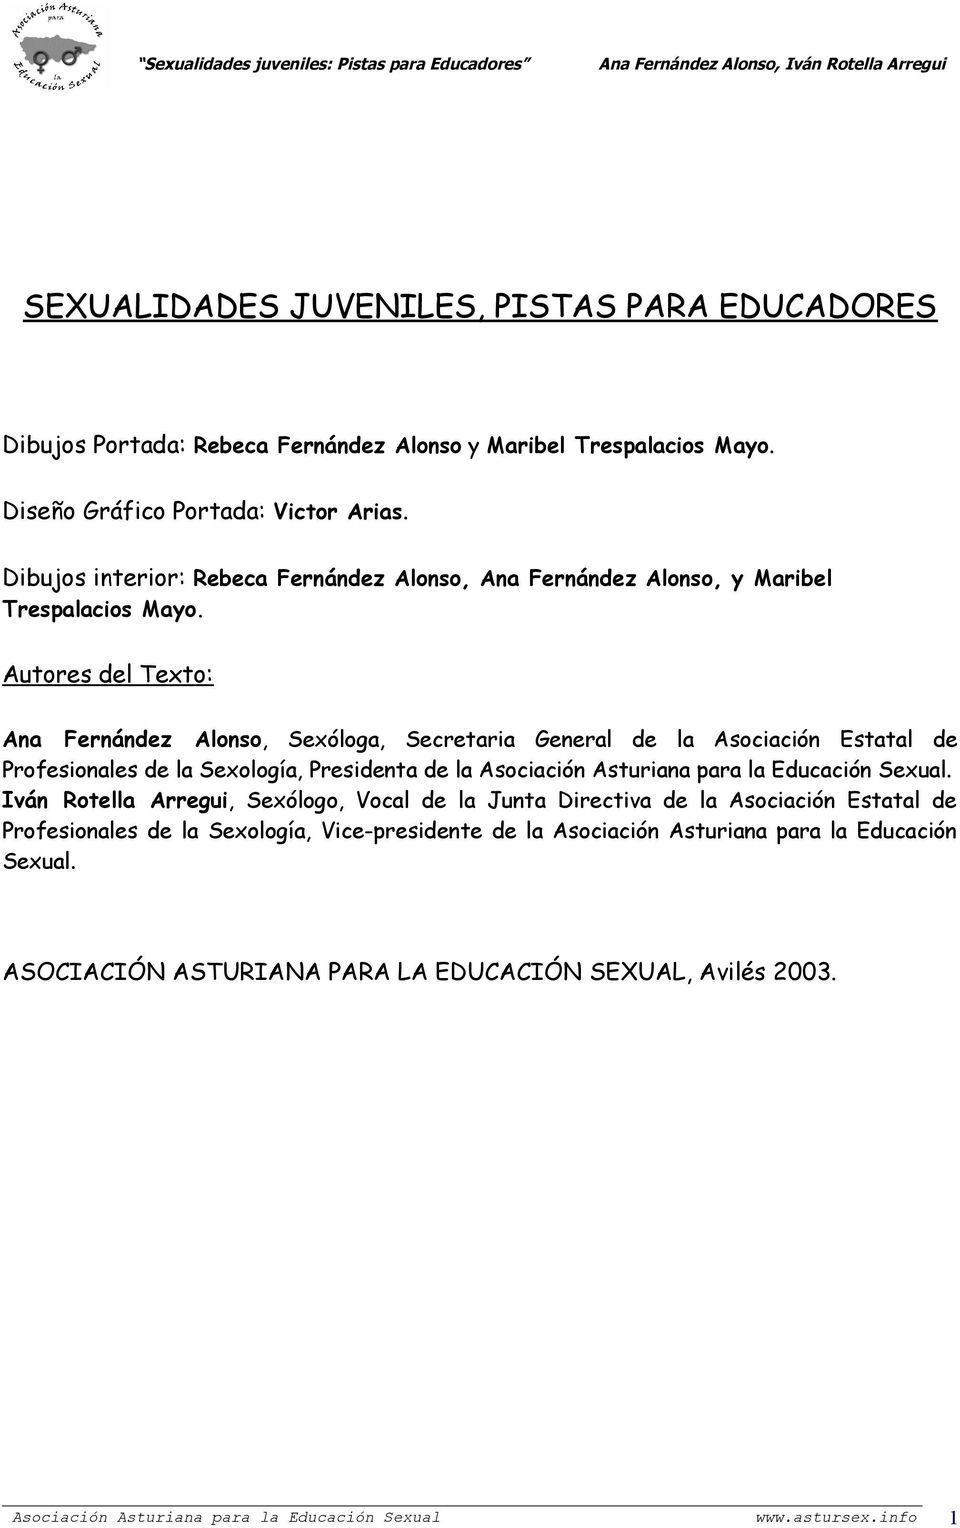 Autores del Texto: Ana Fernández Alonso, Sexóloga, Secretaria General de la Asociación Estatal de Profesionales de la Sexología, Presidenta de la Asociación Asturiana para la Educación